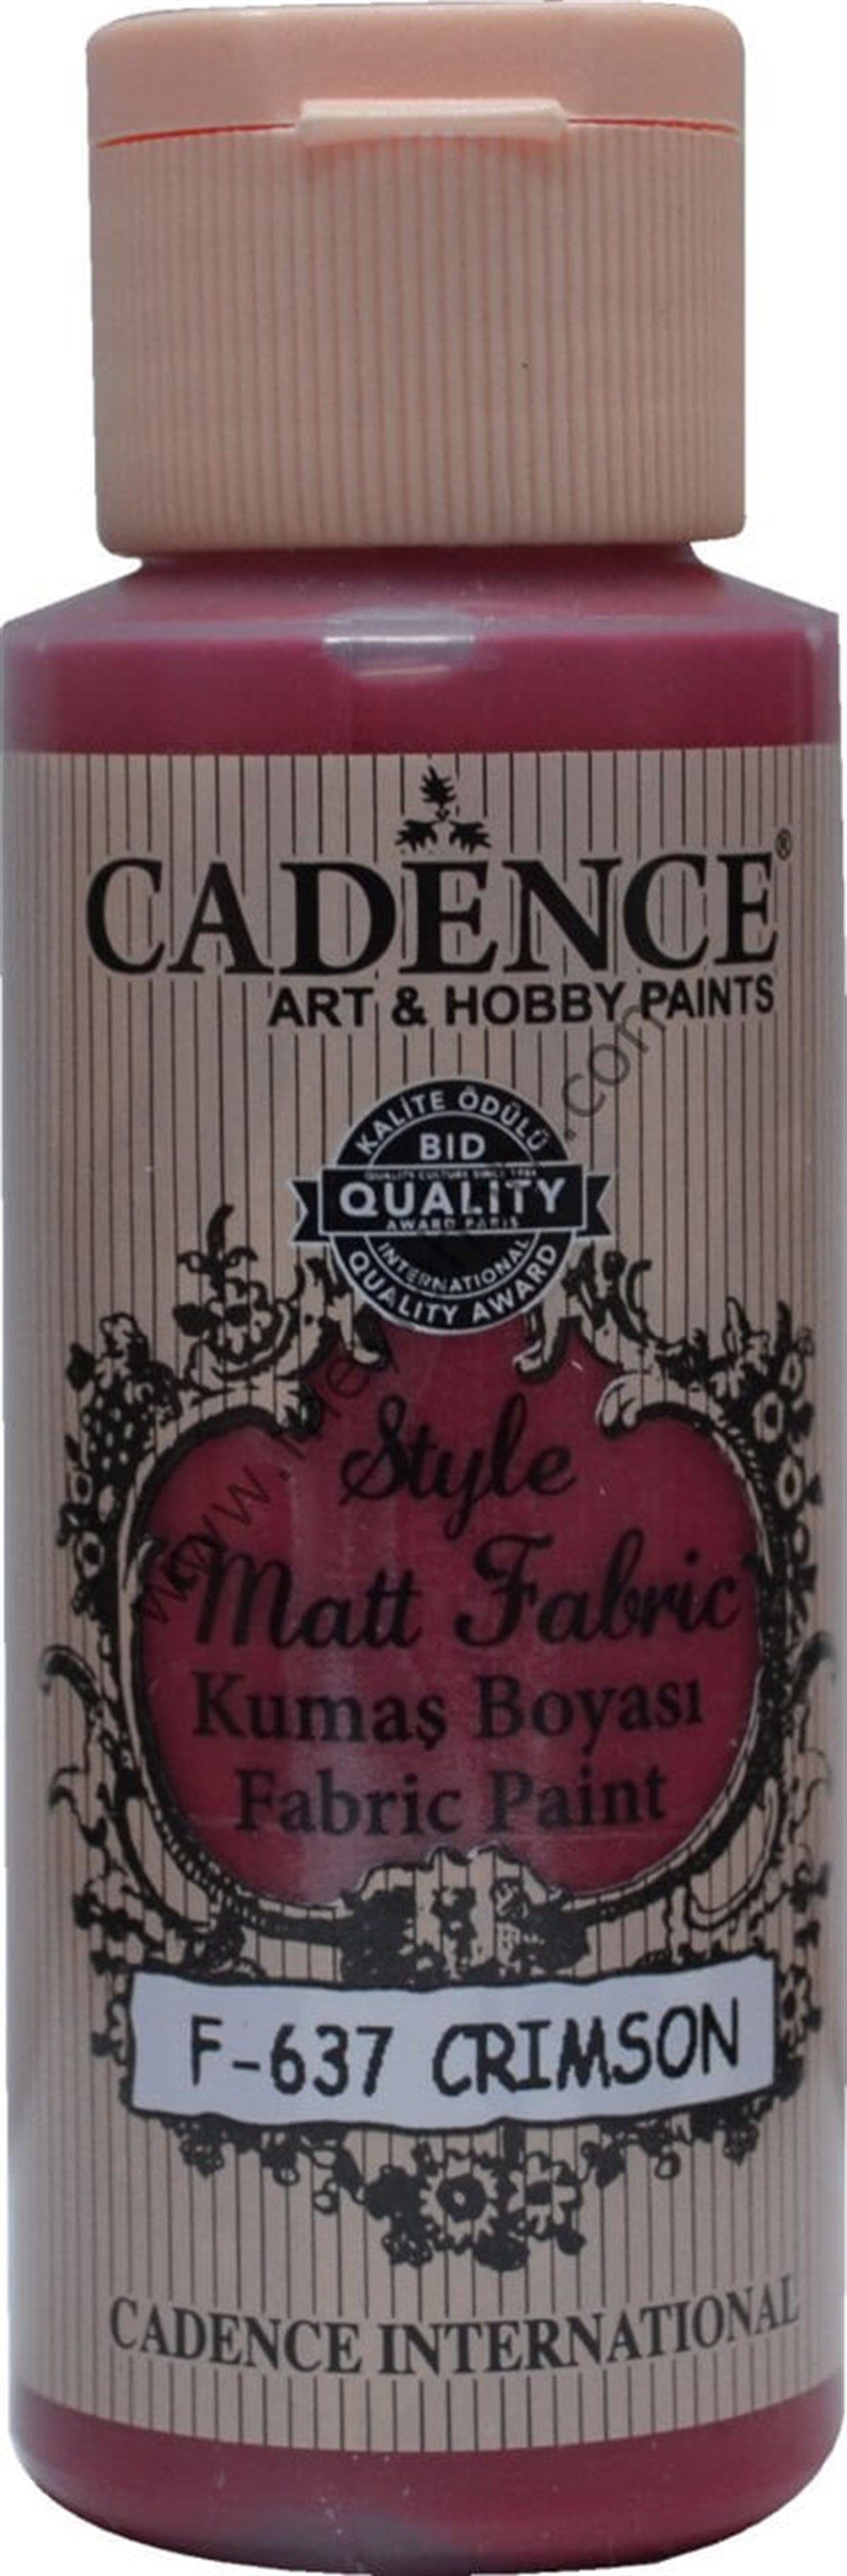 Cadence Style Matt Kumaş Boyası 59 Ml 637 Crimson